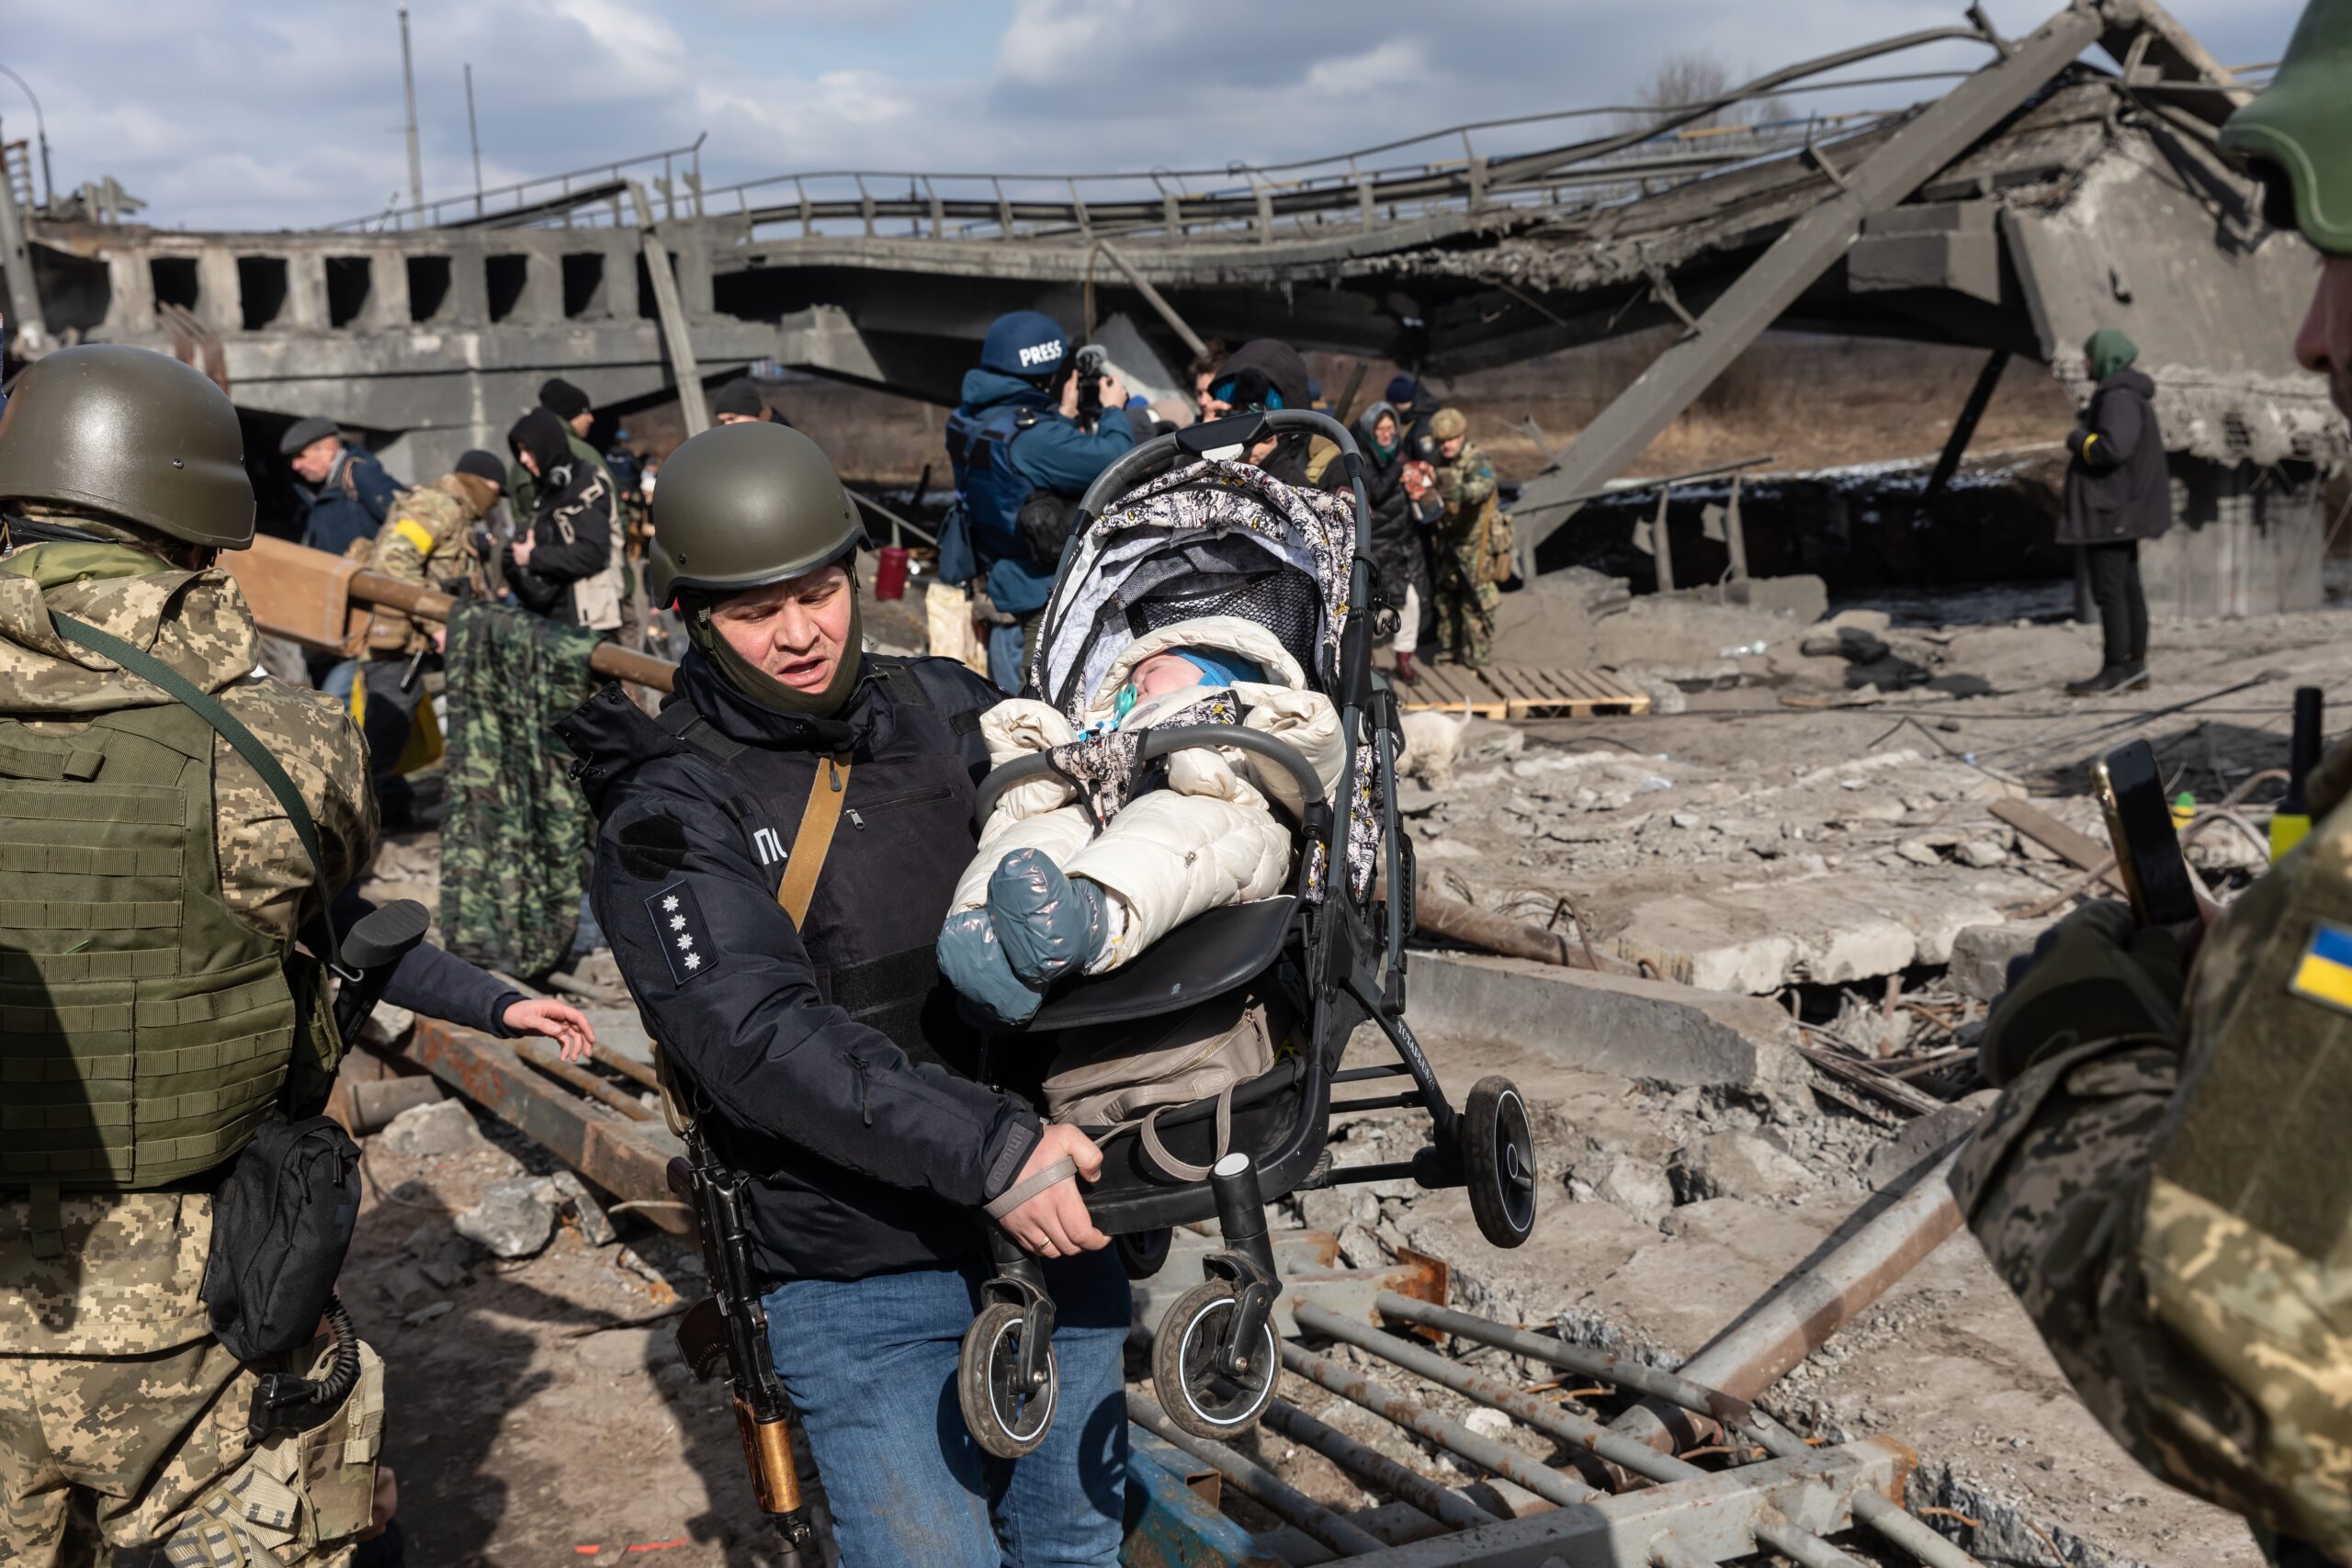 Attacco missilistico a Kiev: 53 feriti, tra cui sei bambini – Zelensky a Washington per chiedere sostegno